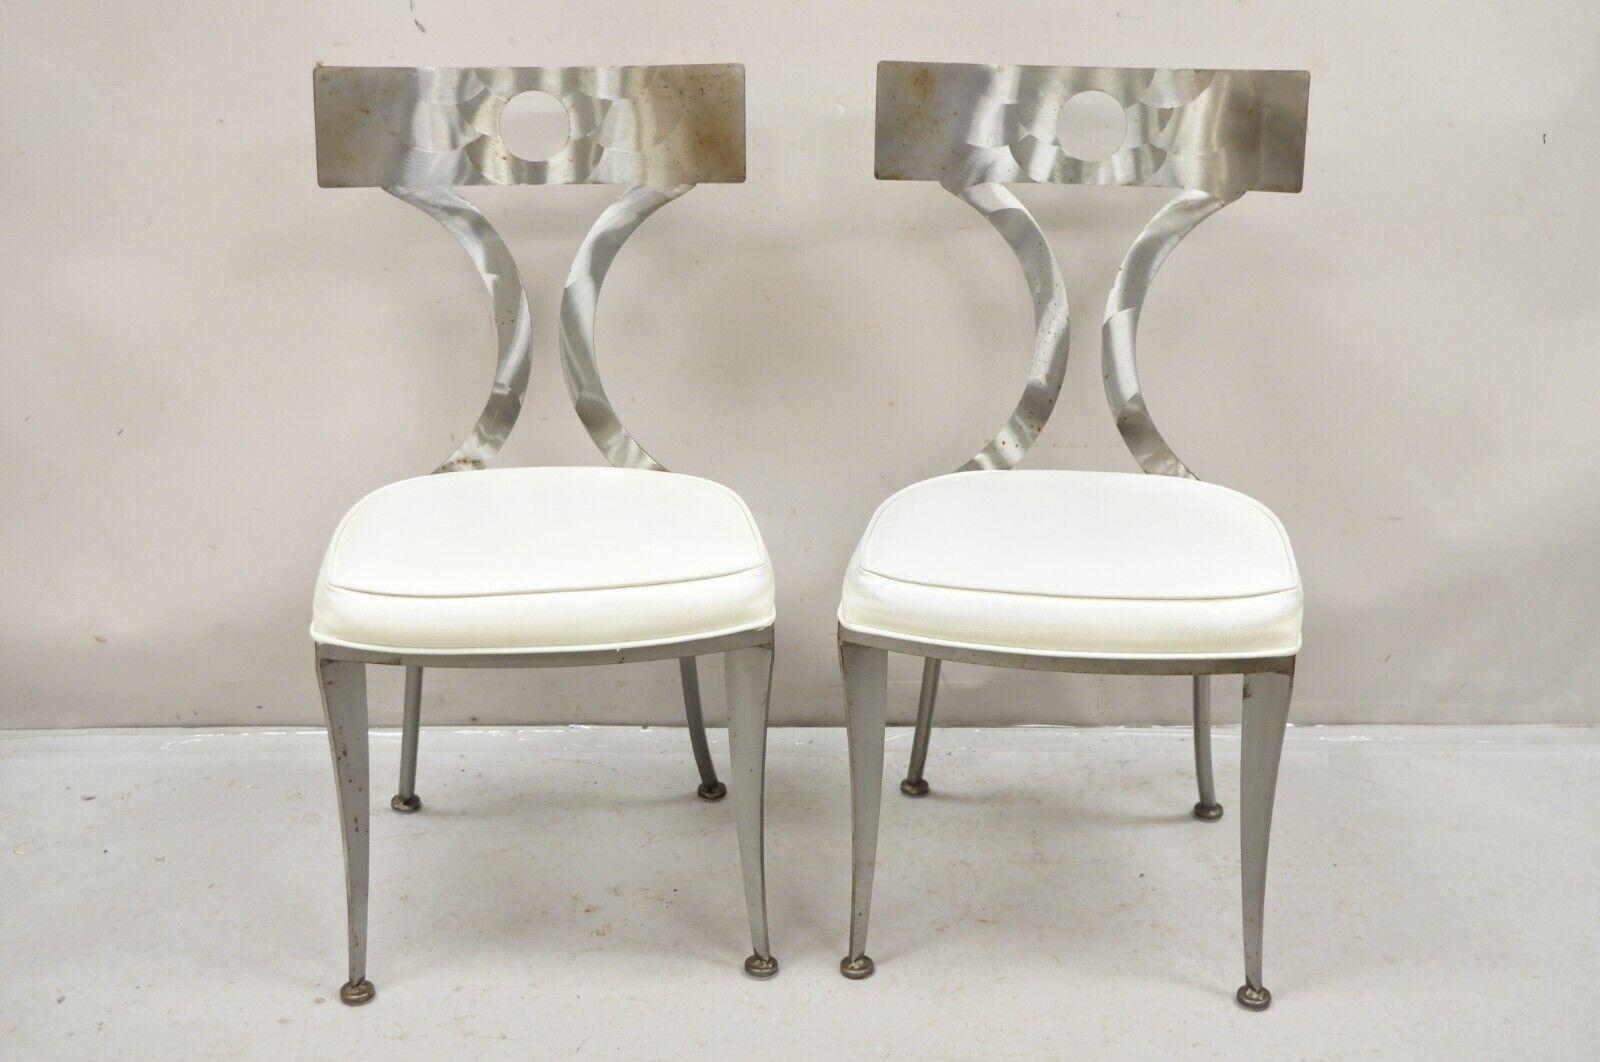 Paar Vintage Shaver Howard gebürstetem Stahl Modern Regency Style Side Chairs. Der Artikel zeichnet sich durch abgewinkelte Klismos-Säbelbeine, skulpturale Rückenlehnen, weiße Vinylpolsterung, Originaletiketten, großen Stil und Form aus. CIRCA